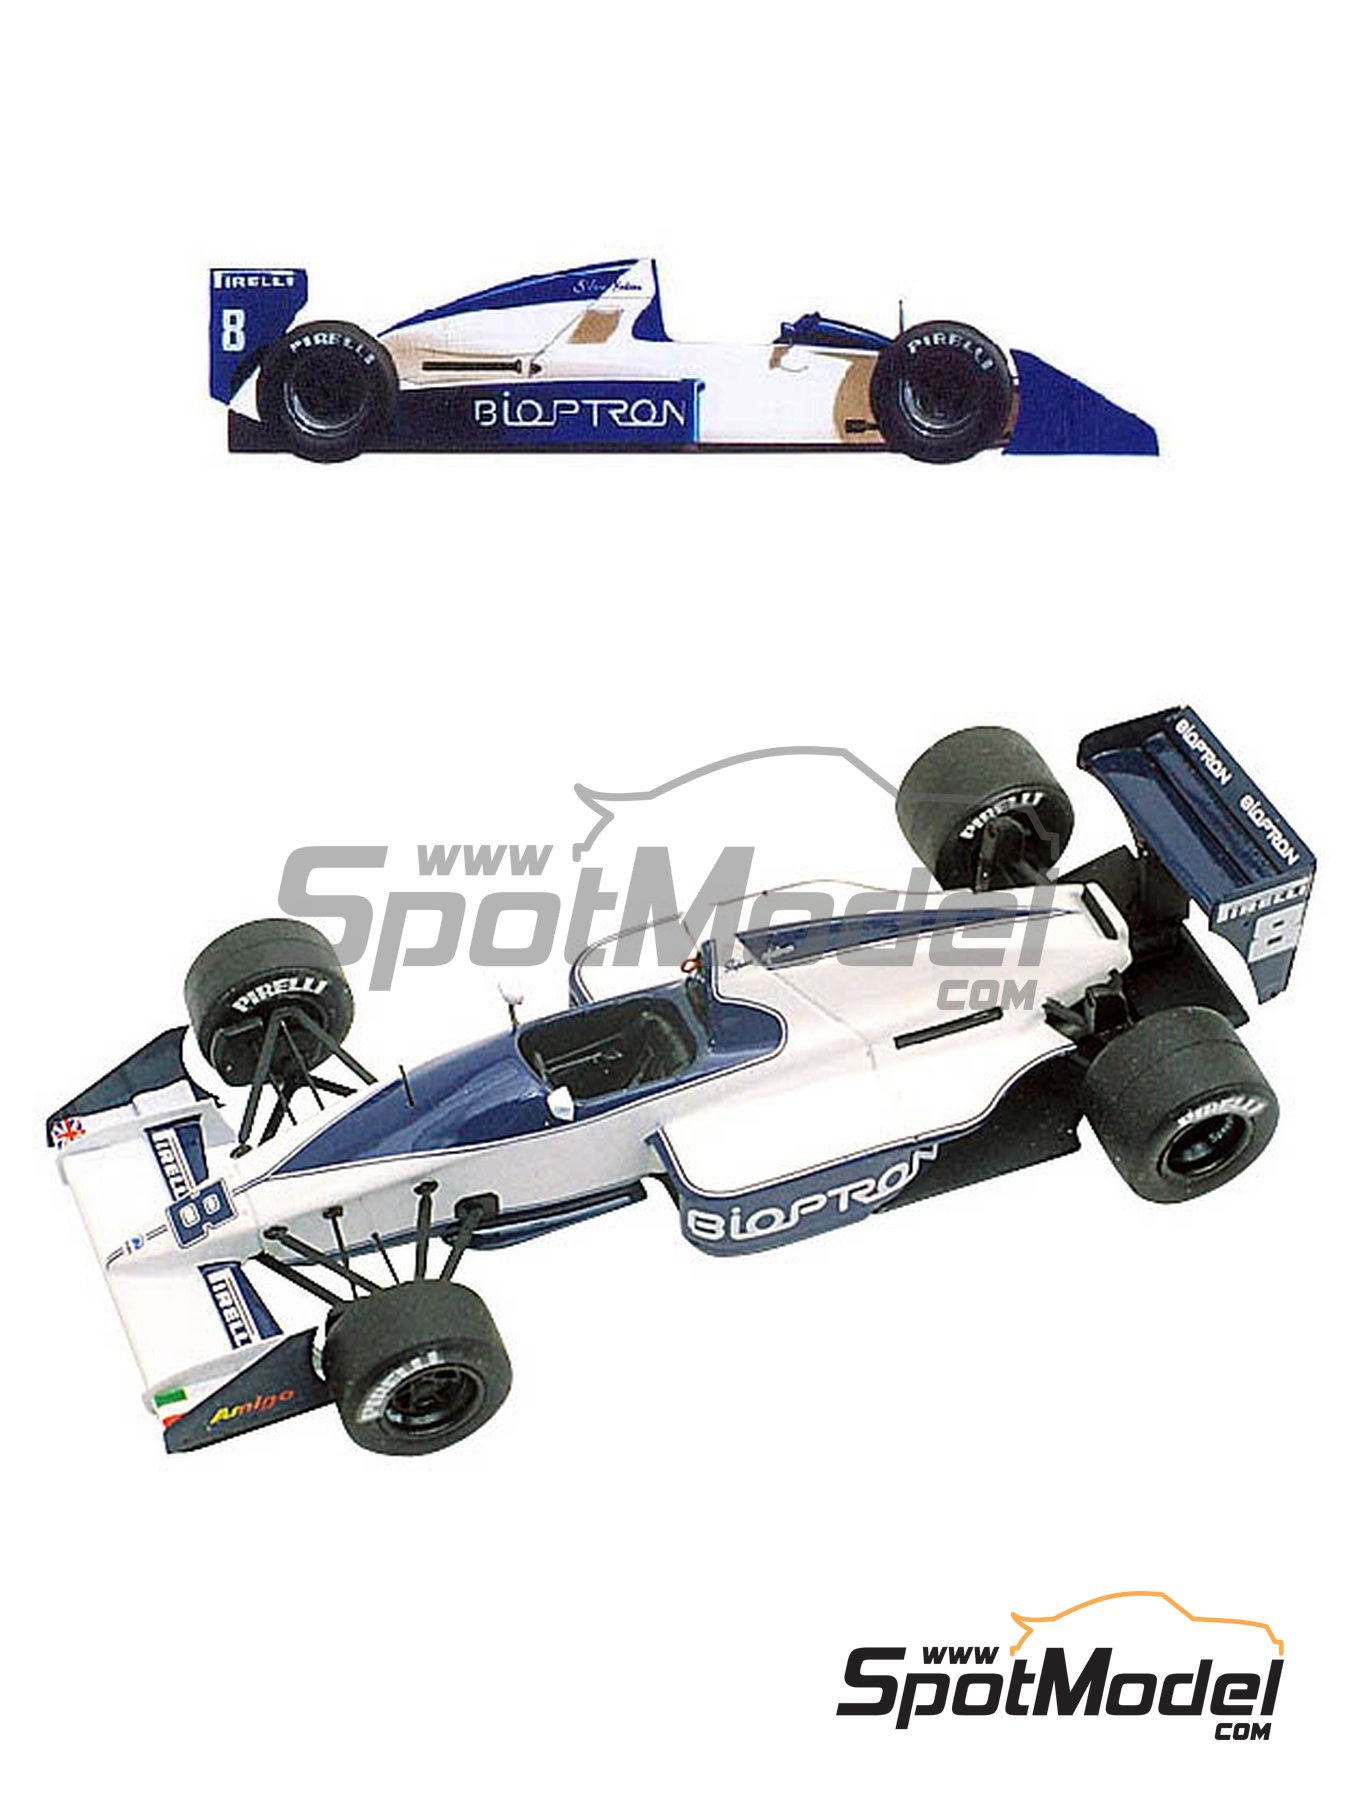 Brabham Formula 1 Cars - AGR Models & Diecast